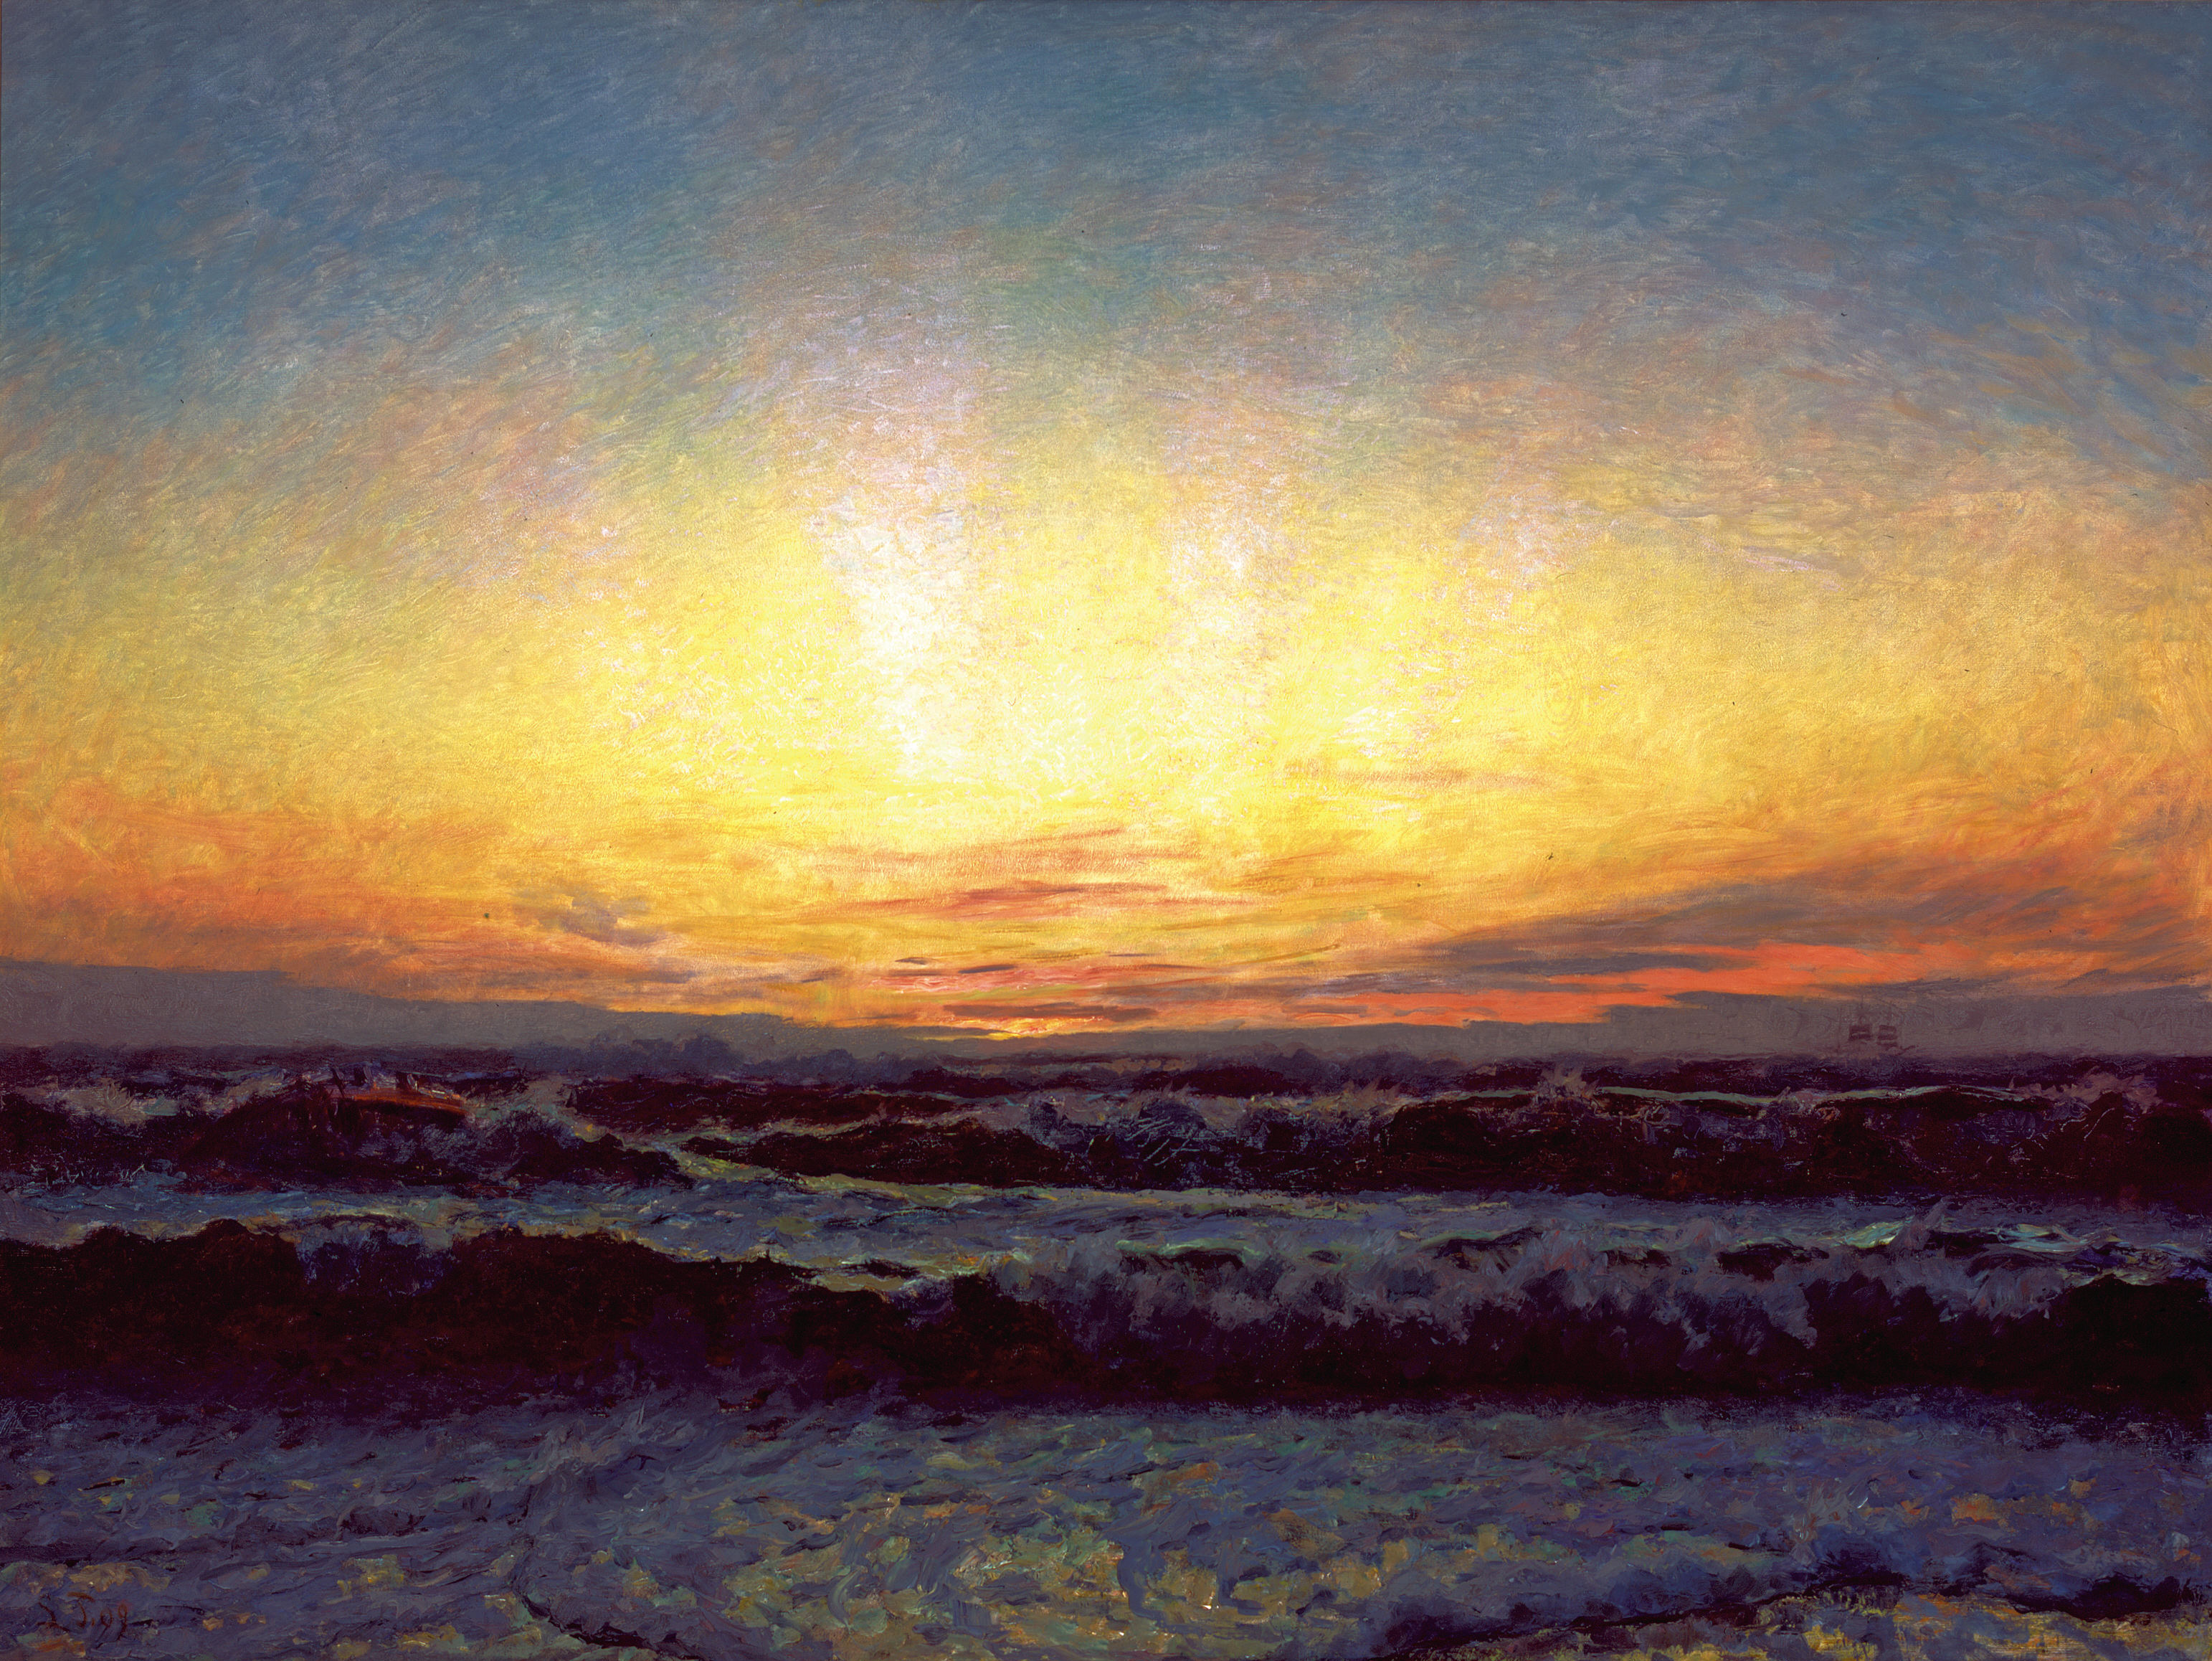 La mer du nord en cas de tempêtes. Après la coucher du soleil. Højen by Laurits Tuxen - 1909 